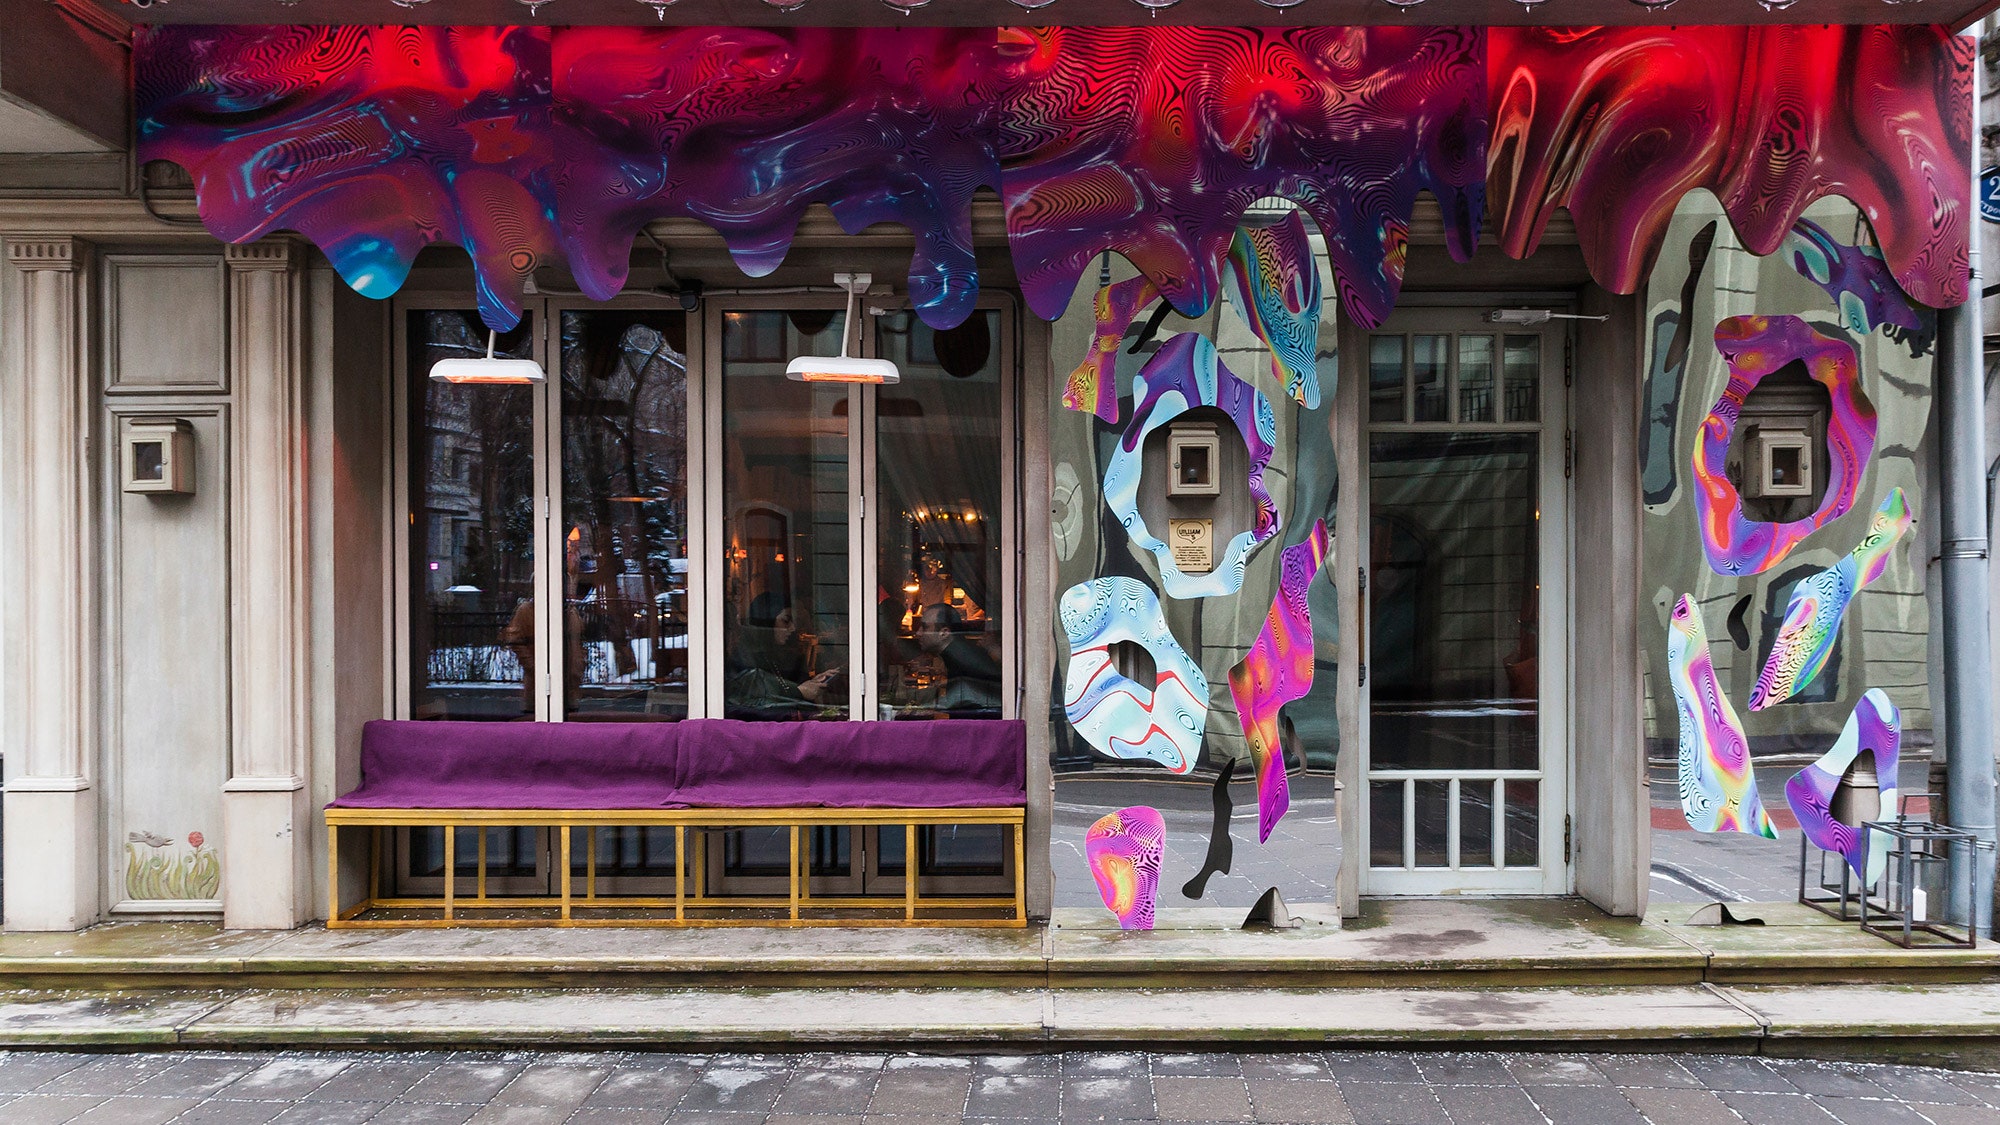 “Подарим городу искусство” художники украсили шесть московских ресторанов